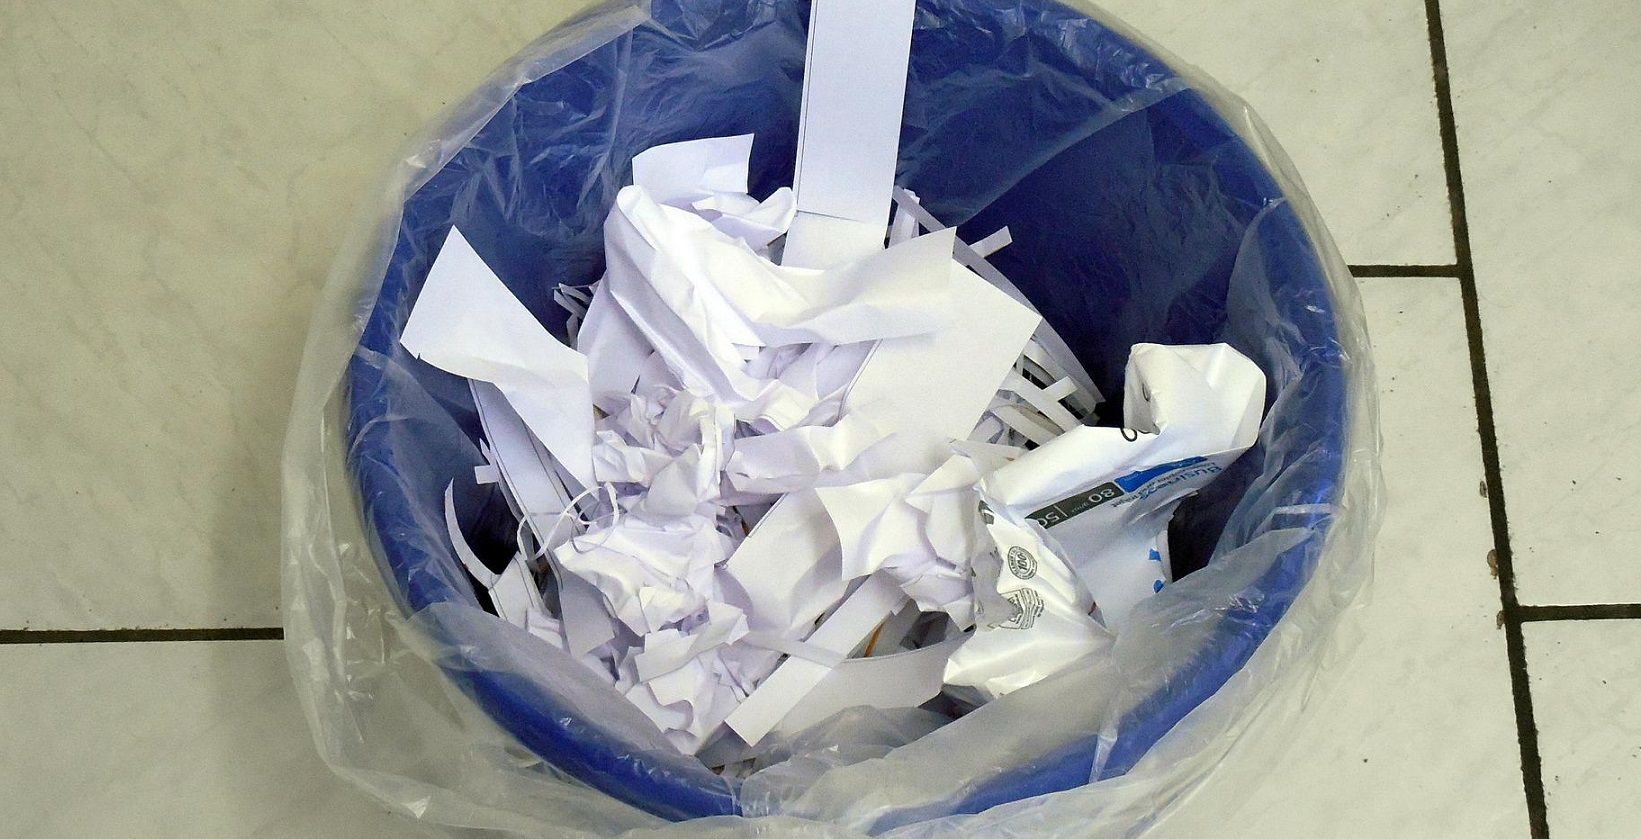 A paper bin 